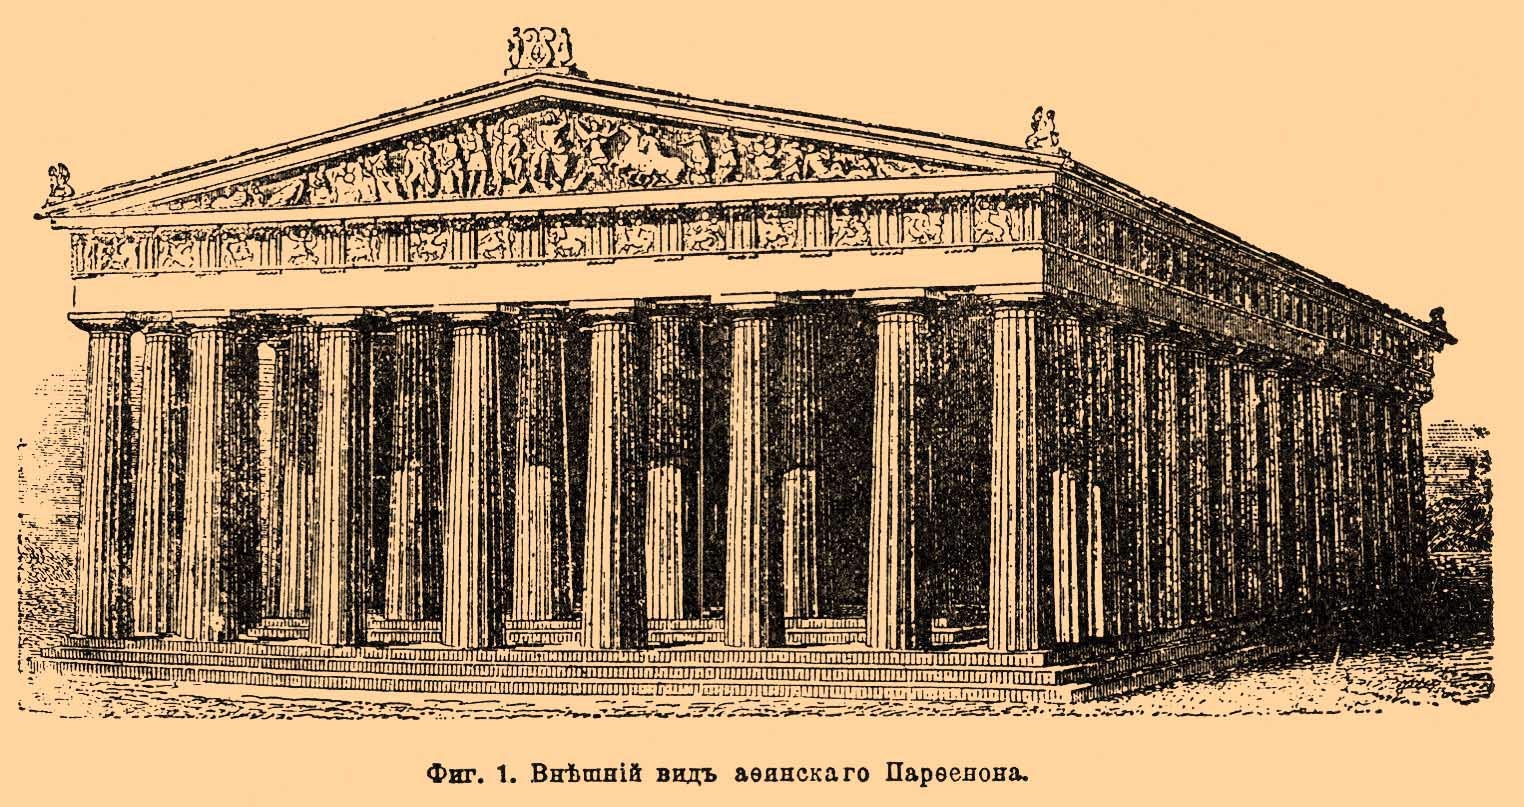 Храм Парфенон в Афинах Греция 5 век